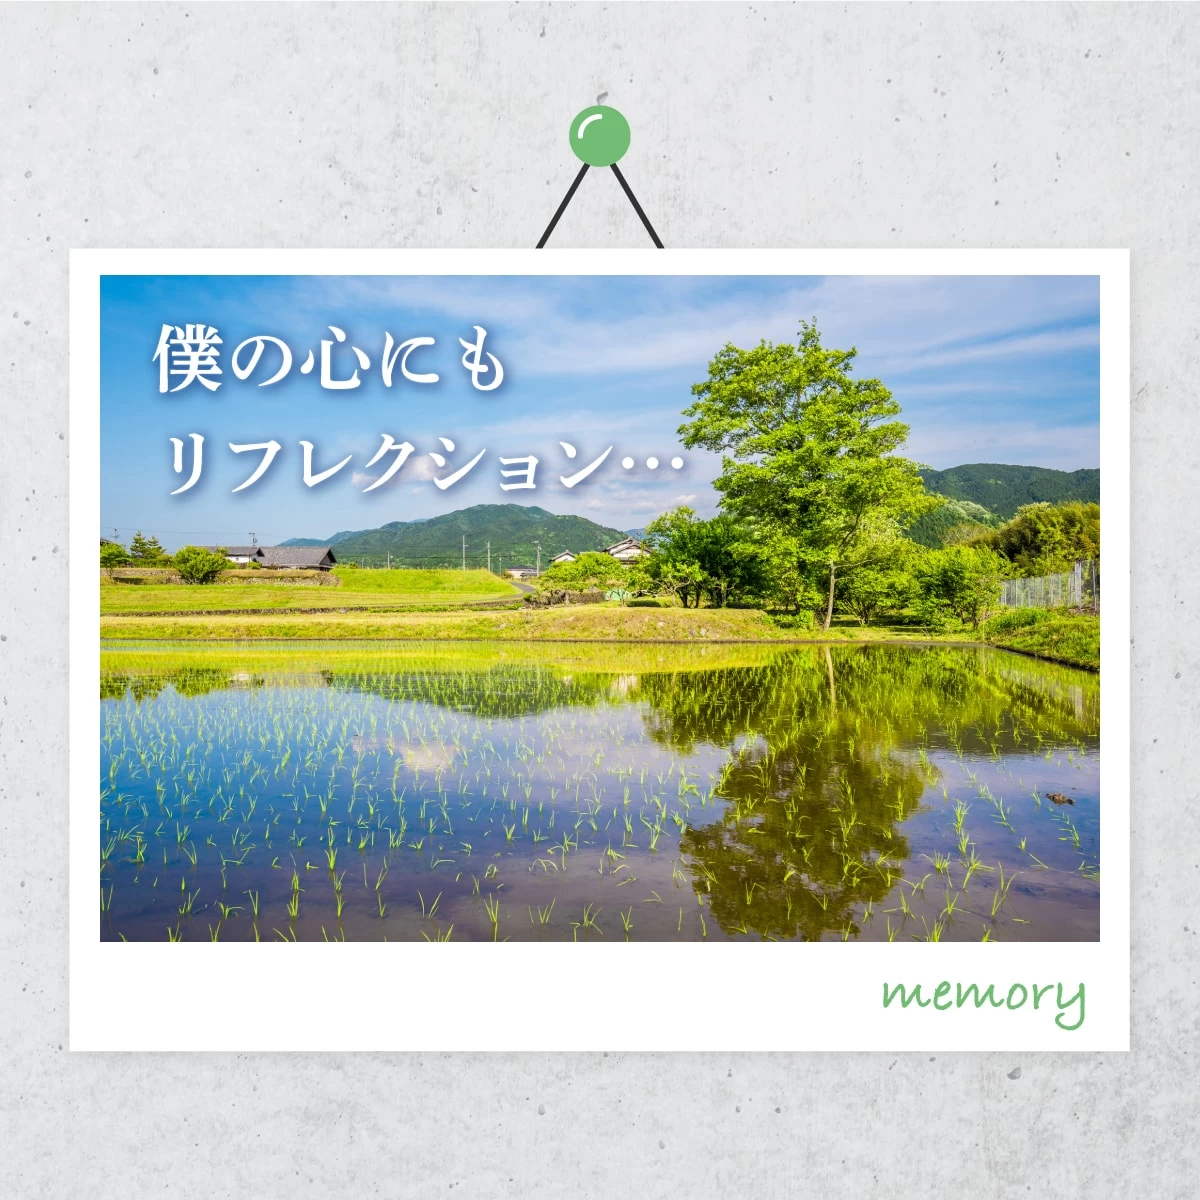 恵那は日本一の農村景観　歴史好きも必見の一人旅